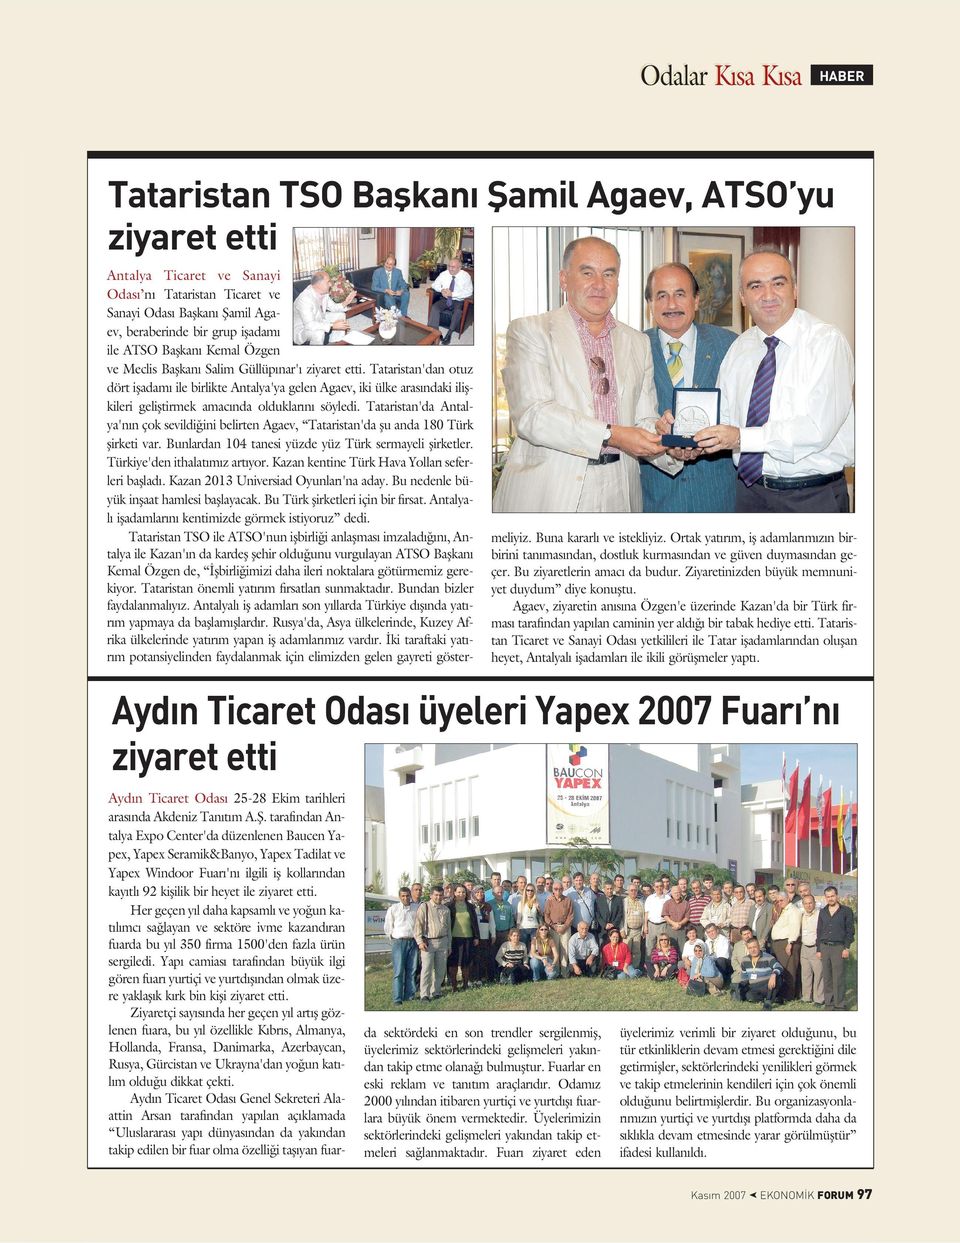 Tataristan'da Antalya'n n çok sevildi ini belirten Agaev, Tataristan'da ﬂu anda 180 Türk ﬂirketi var. Bunlardan 104 tanesi yüzde yüz Türk sermayeli ﬂirketler. Türkiye'den ithalat m z art yor.